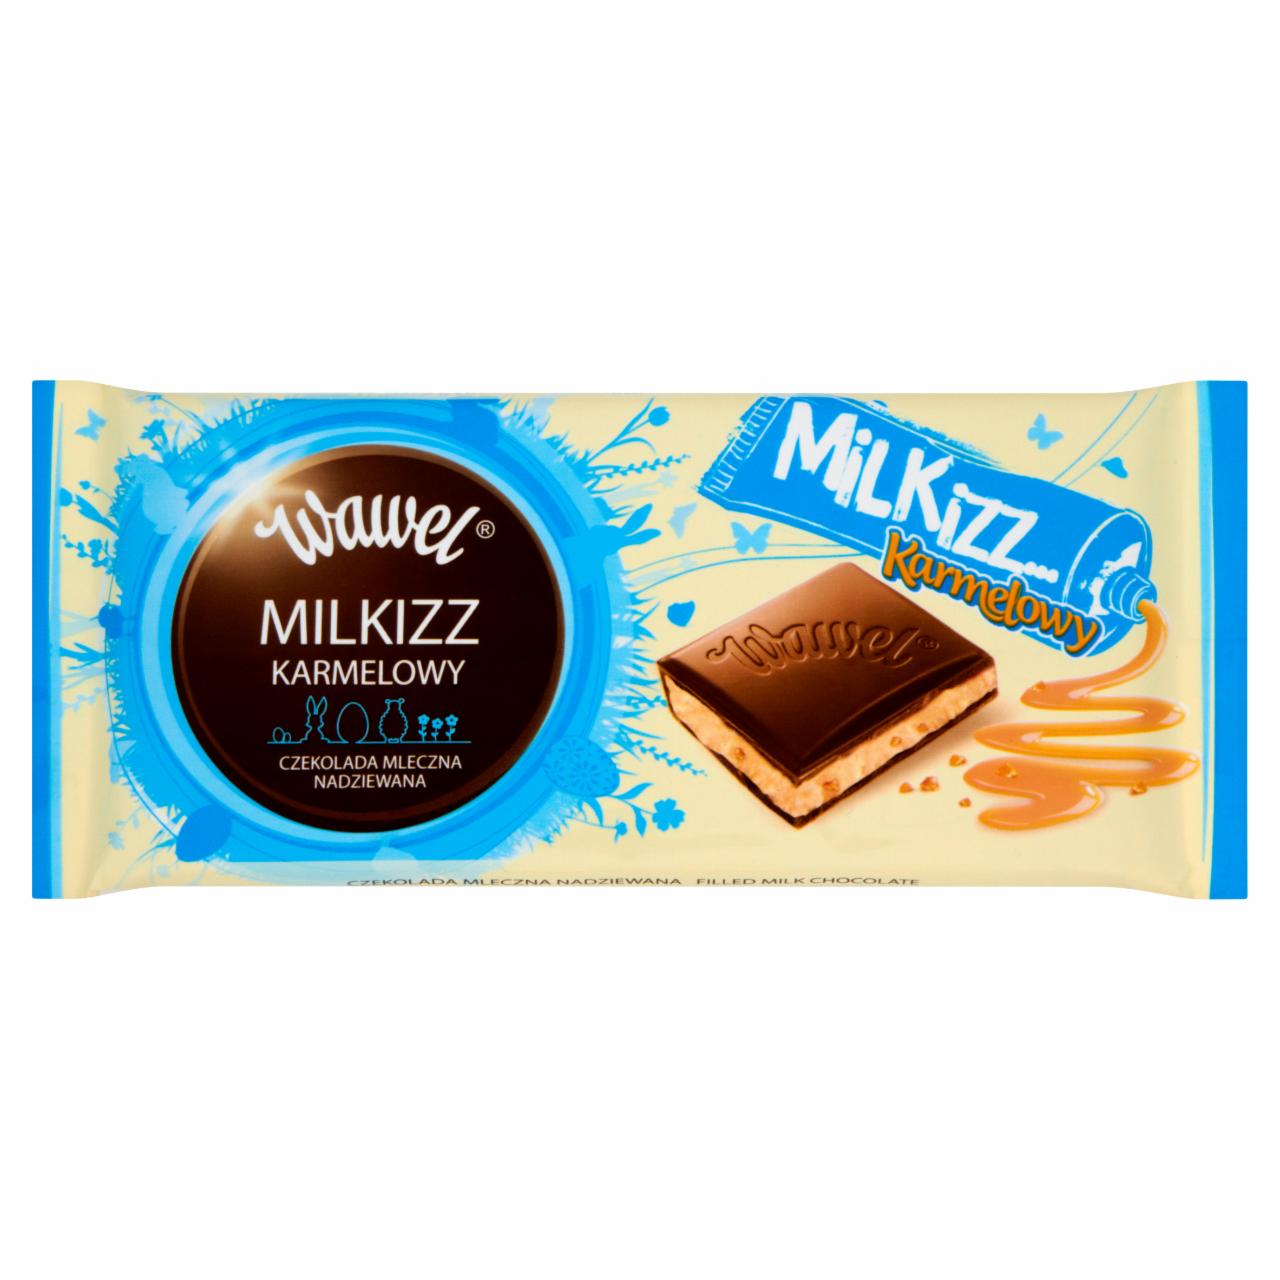 Zdjęcia - Wawel Milkizz karmelowy Czekolada mleczna nadziewana 100 g